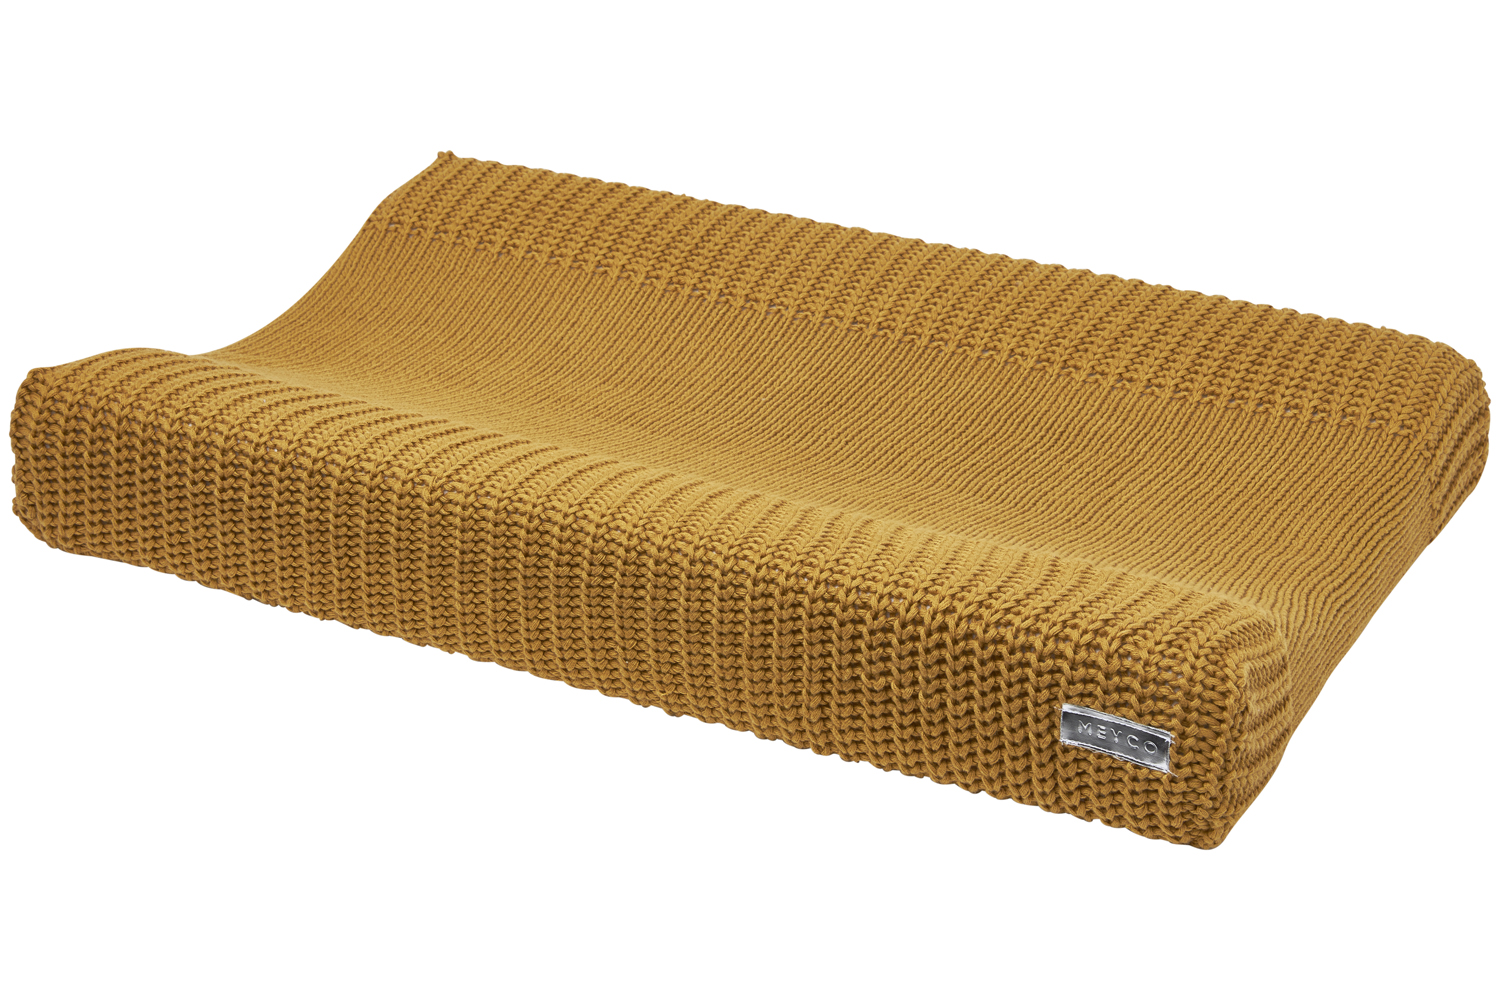 Wickelauflagenbezug Herringbone - Honey Gold - 50x70cm